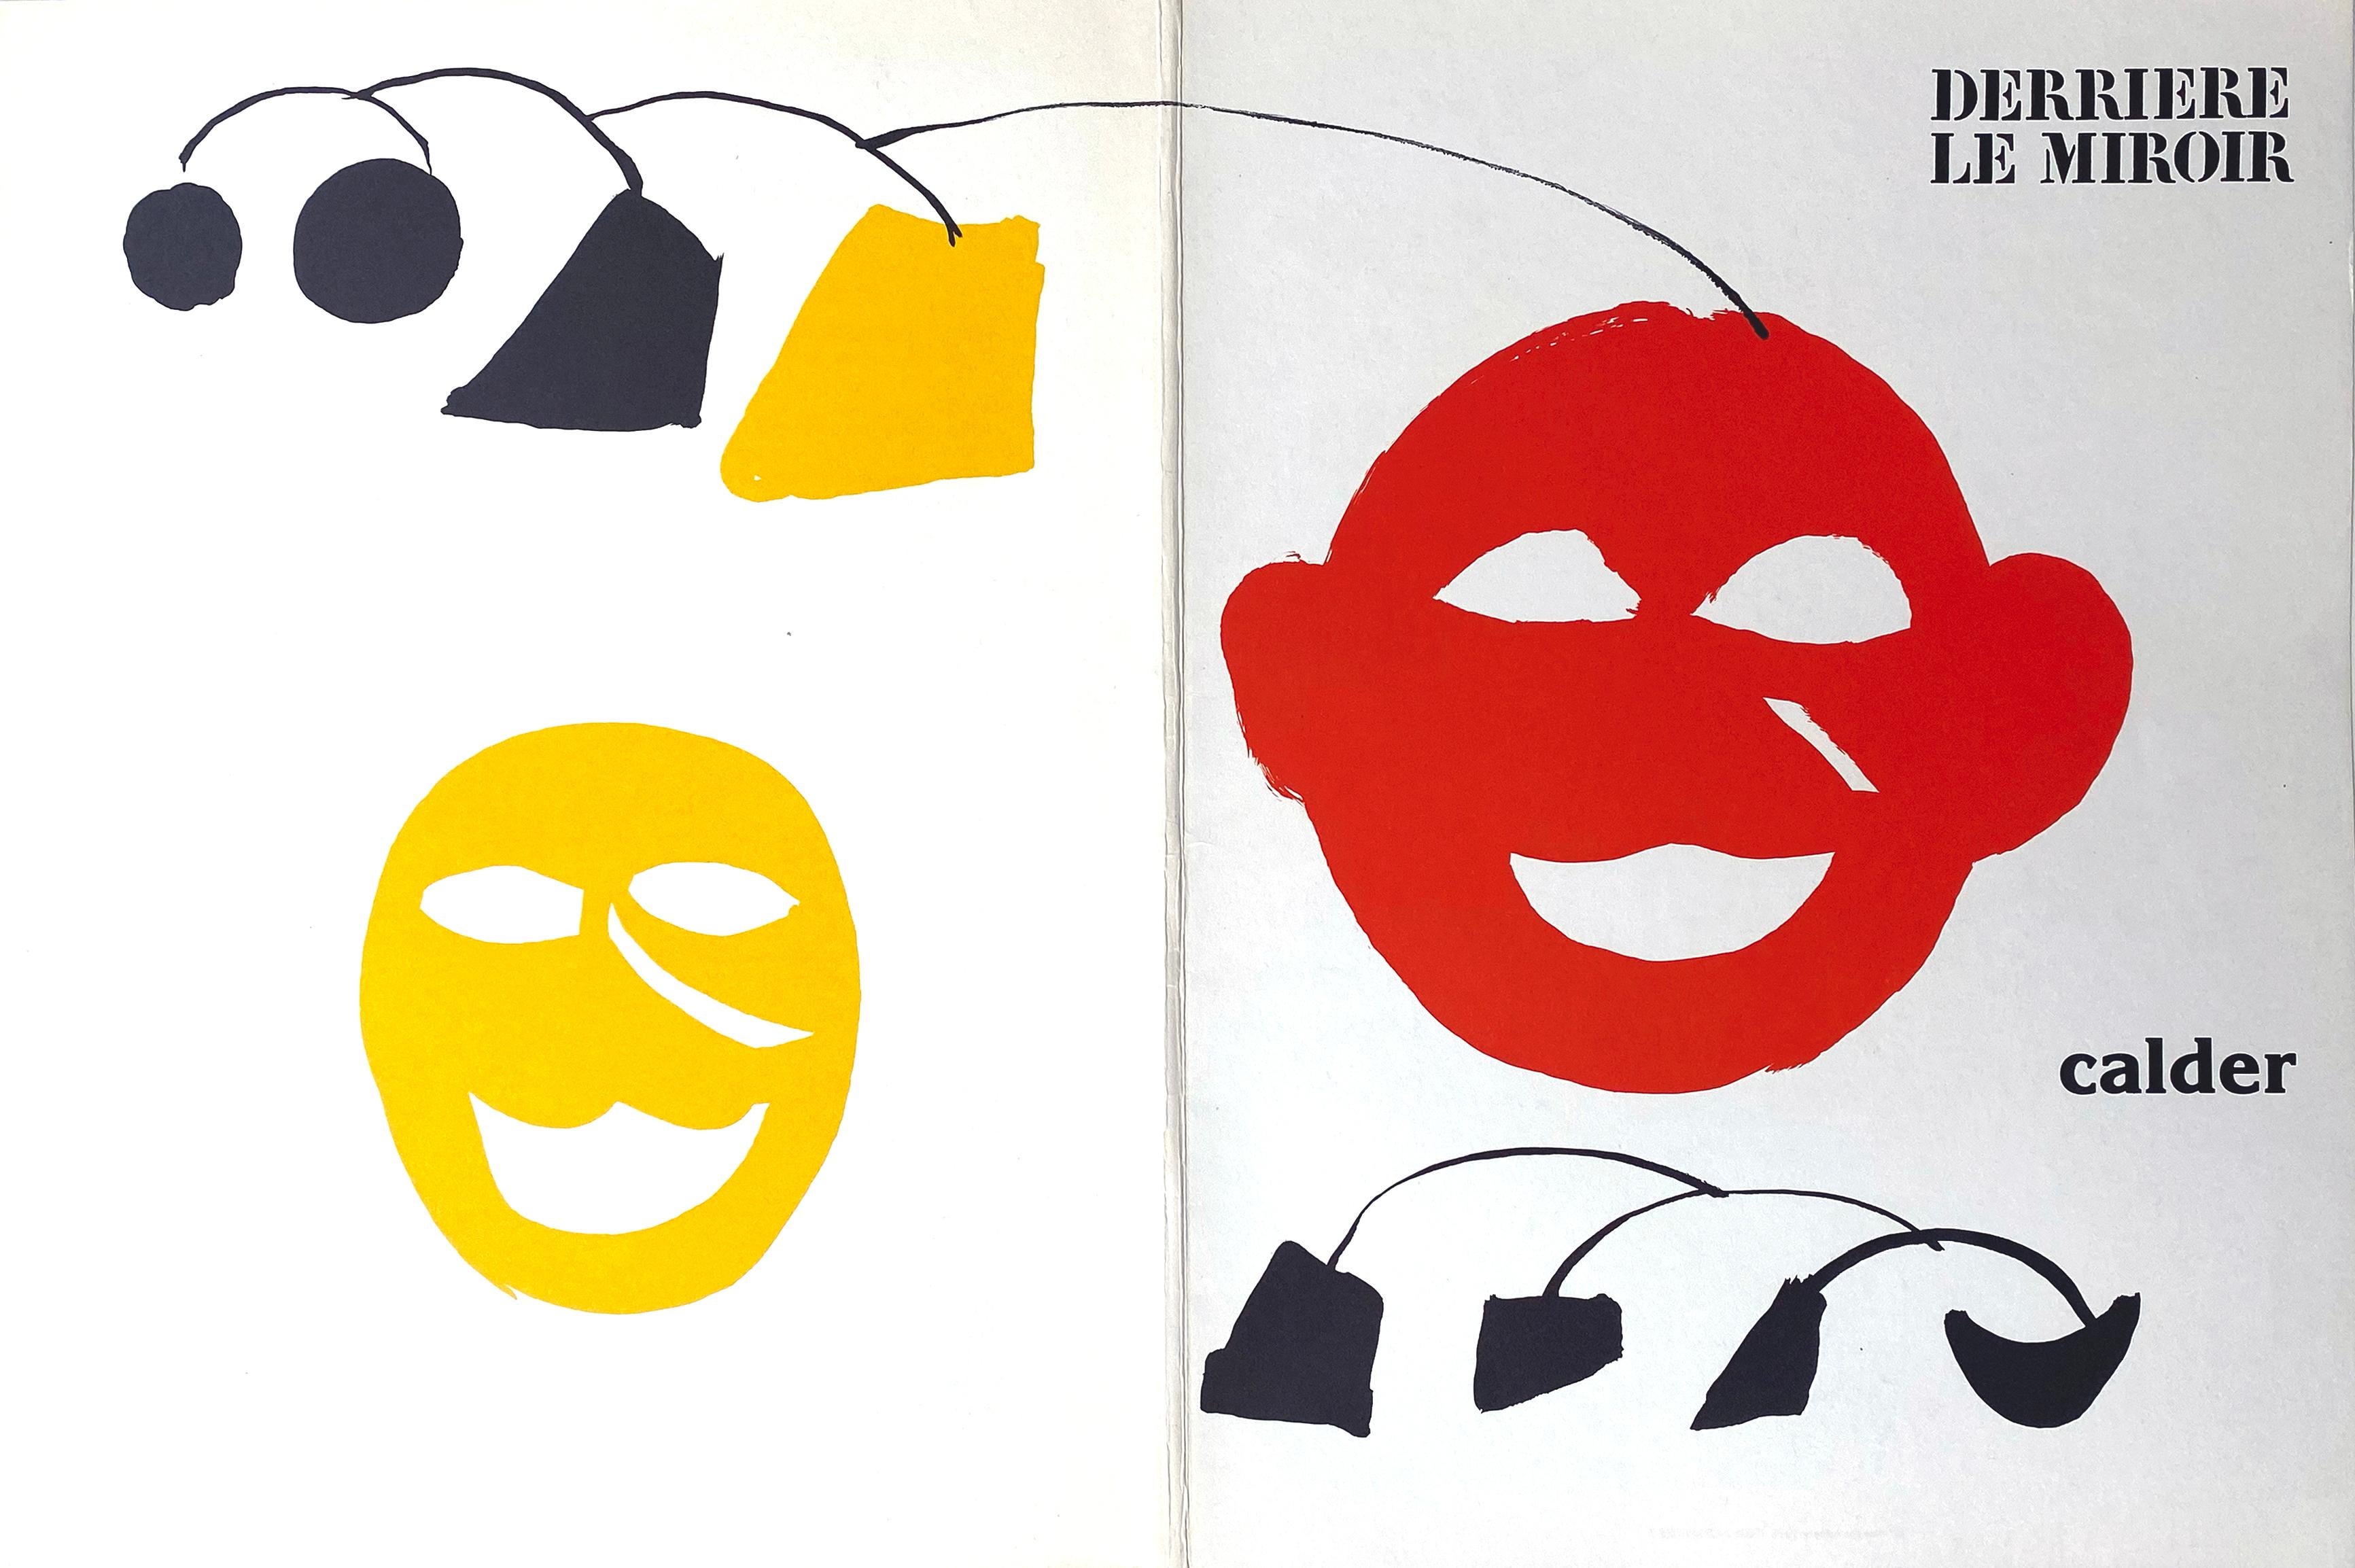 Alexander Calder Abstract Print - Derriere Le Miroir No. 221 Cover